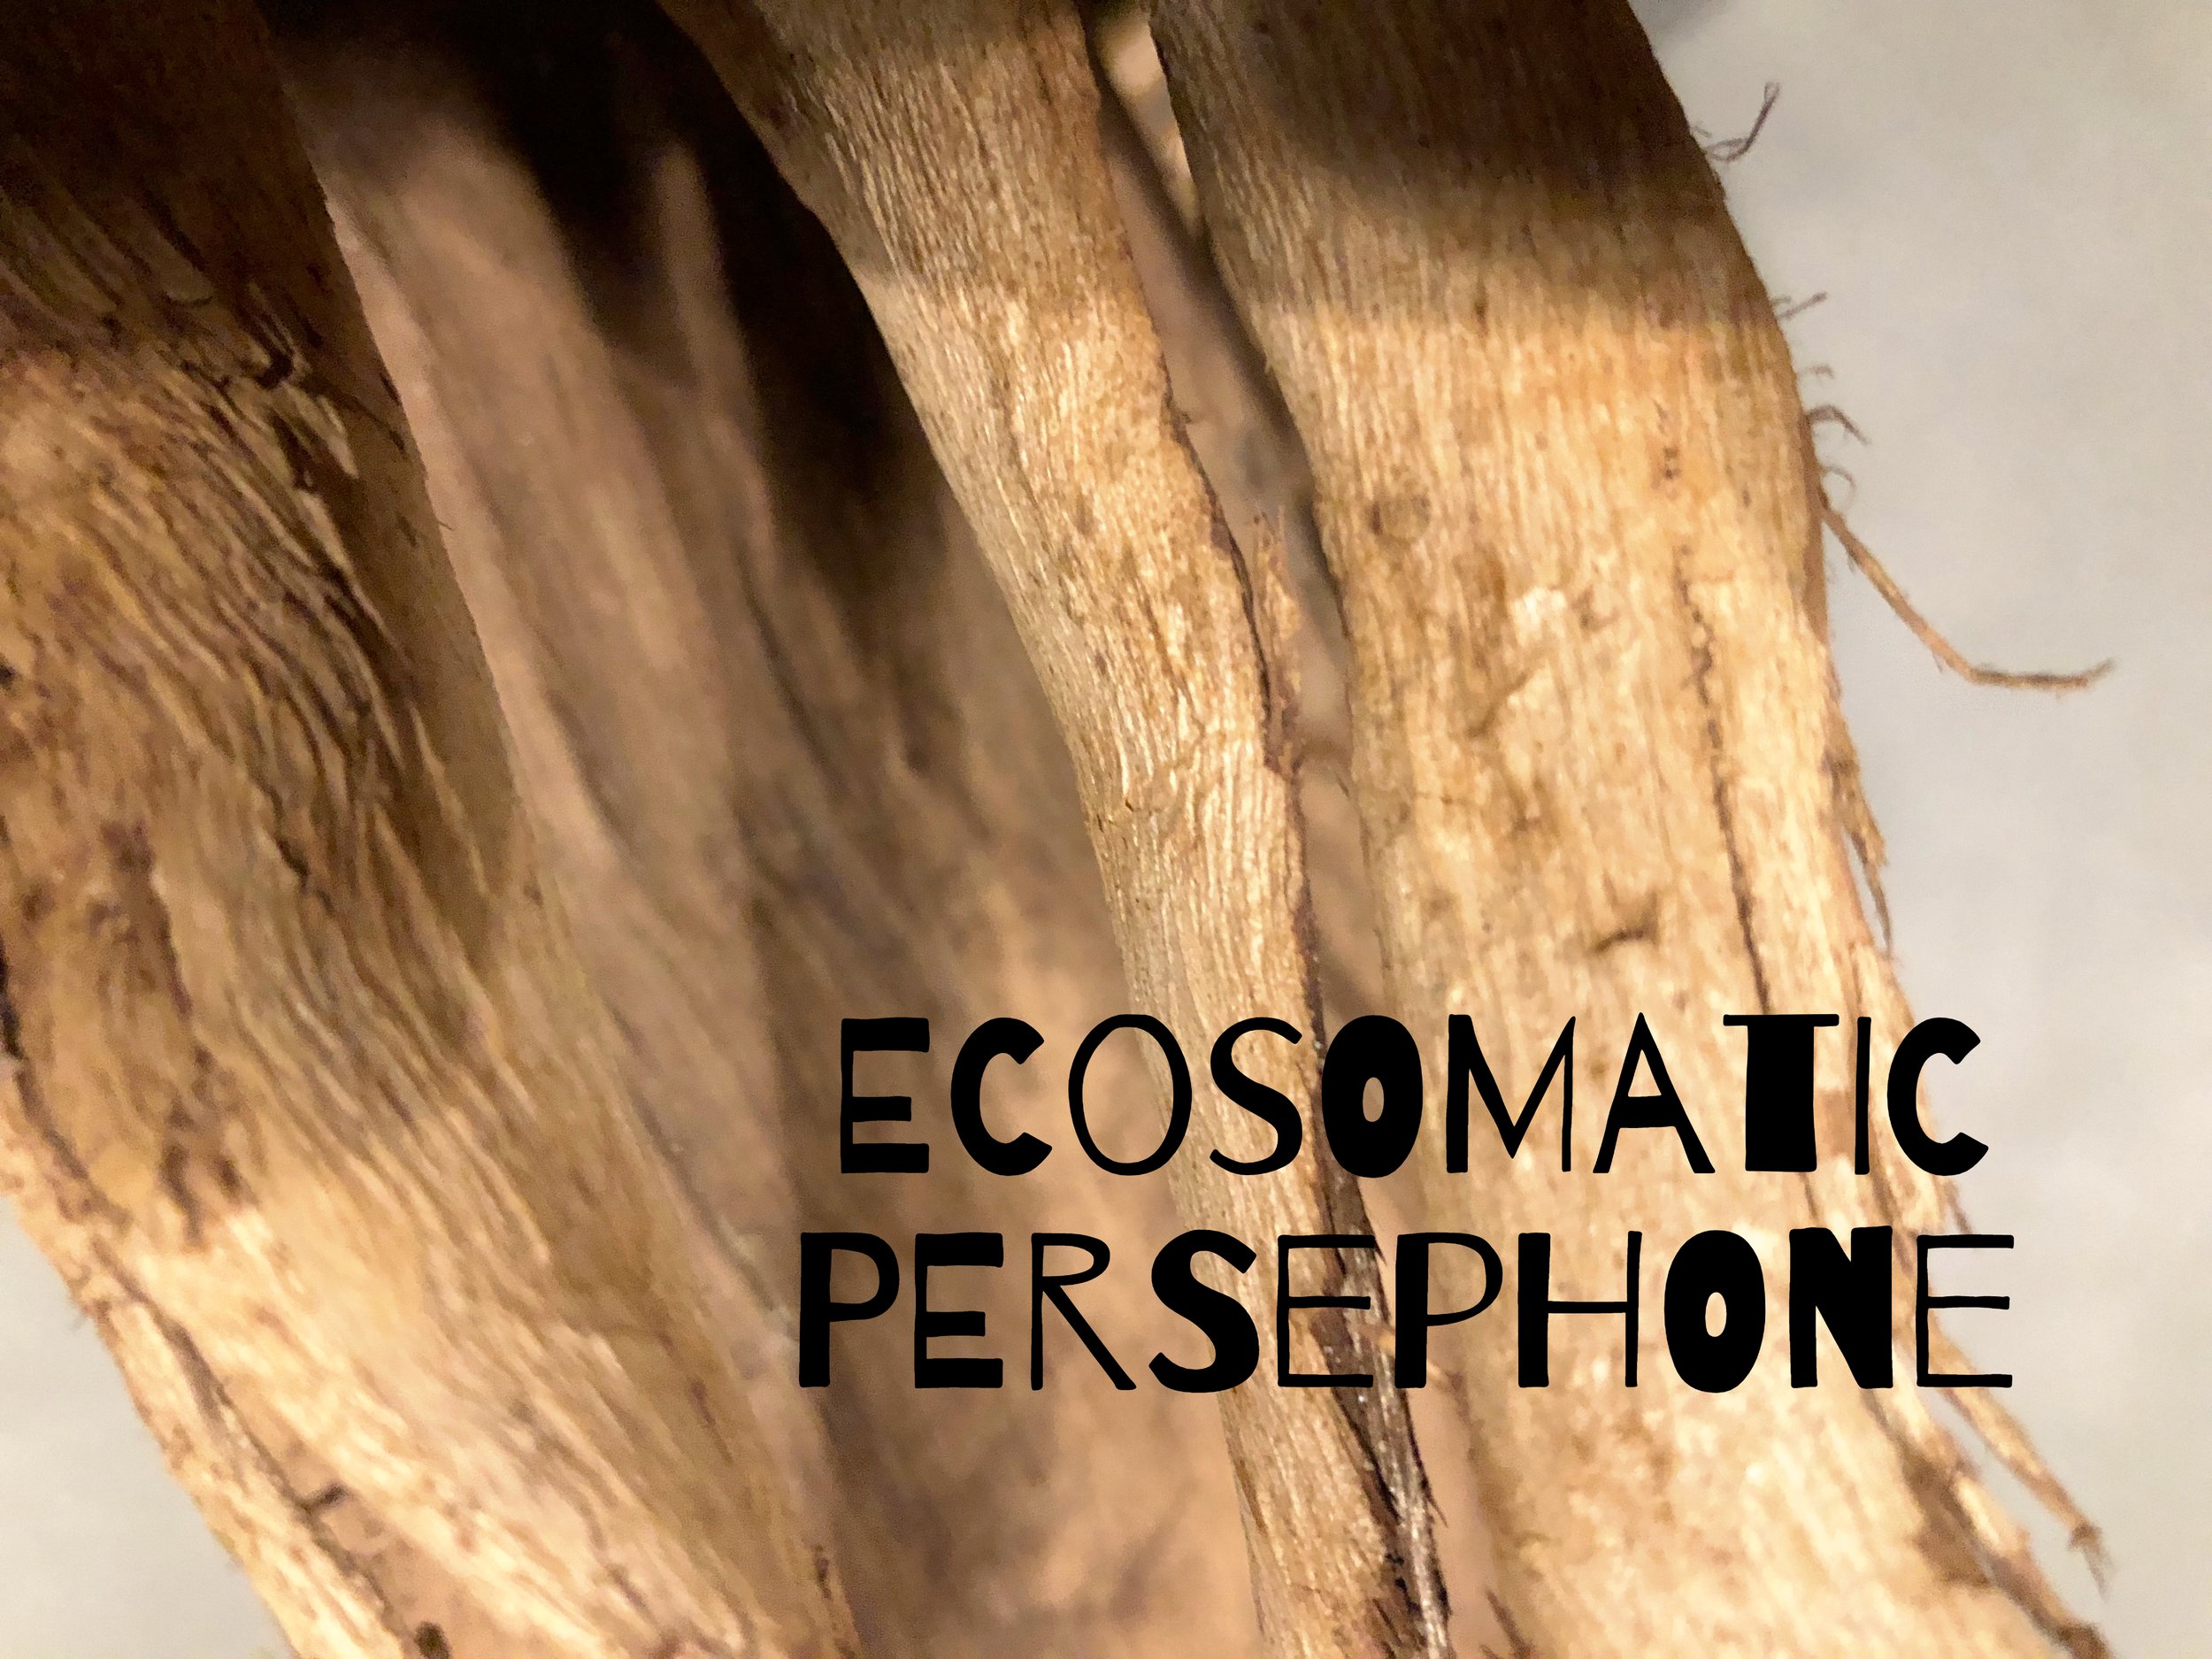 Ecosomatic Persephone